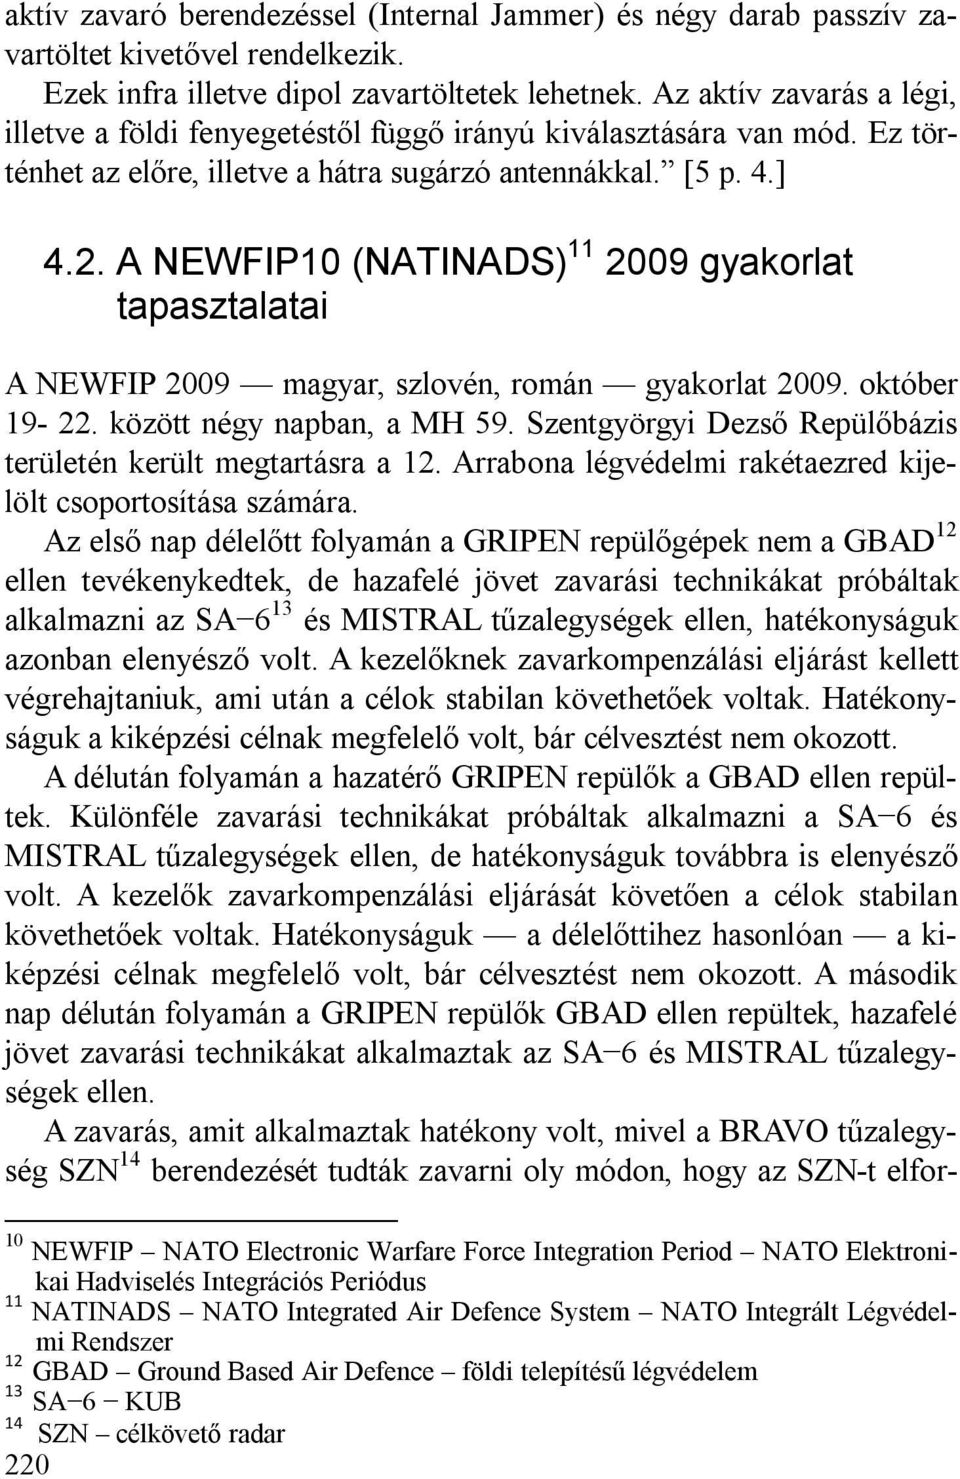 0 4.2. A NEWFIP10 (NATINADS) 11 2009 gyakorlat tapasztalatai A NEWFIP 2009 magyar, szlovén, román gyakorlat 2009. október 19-22. között négy napban, a MH 59.